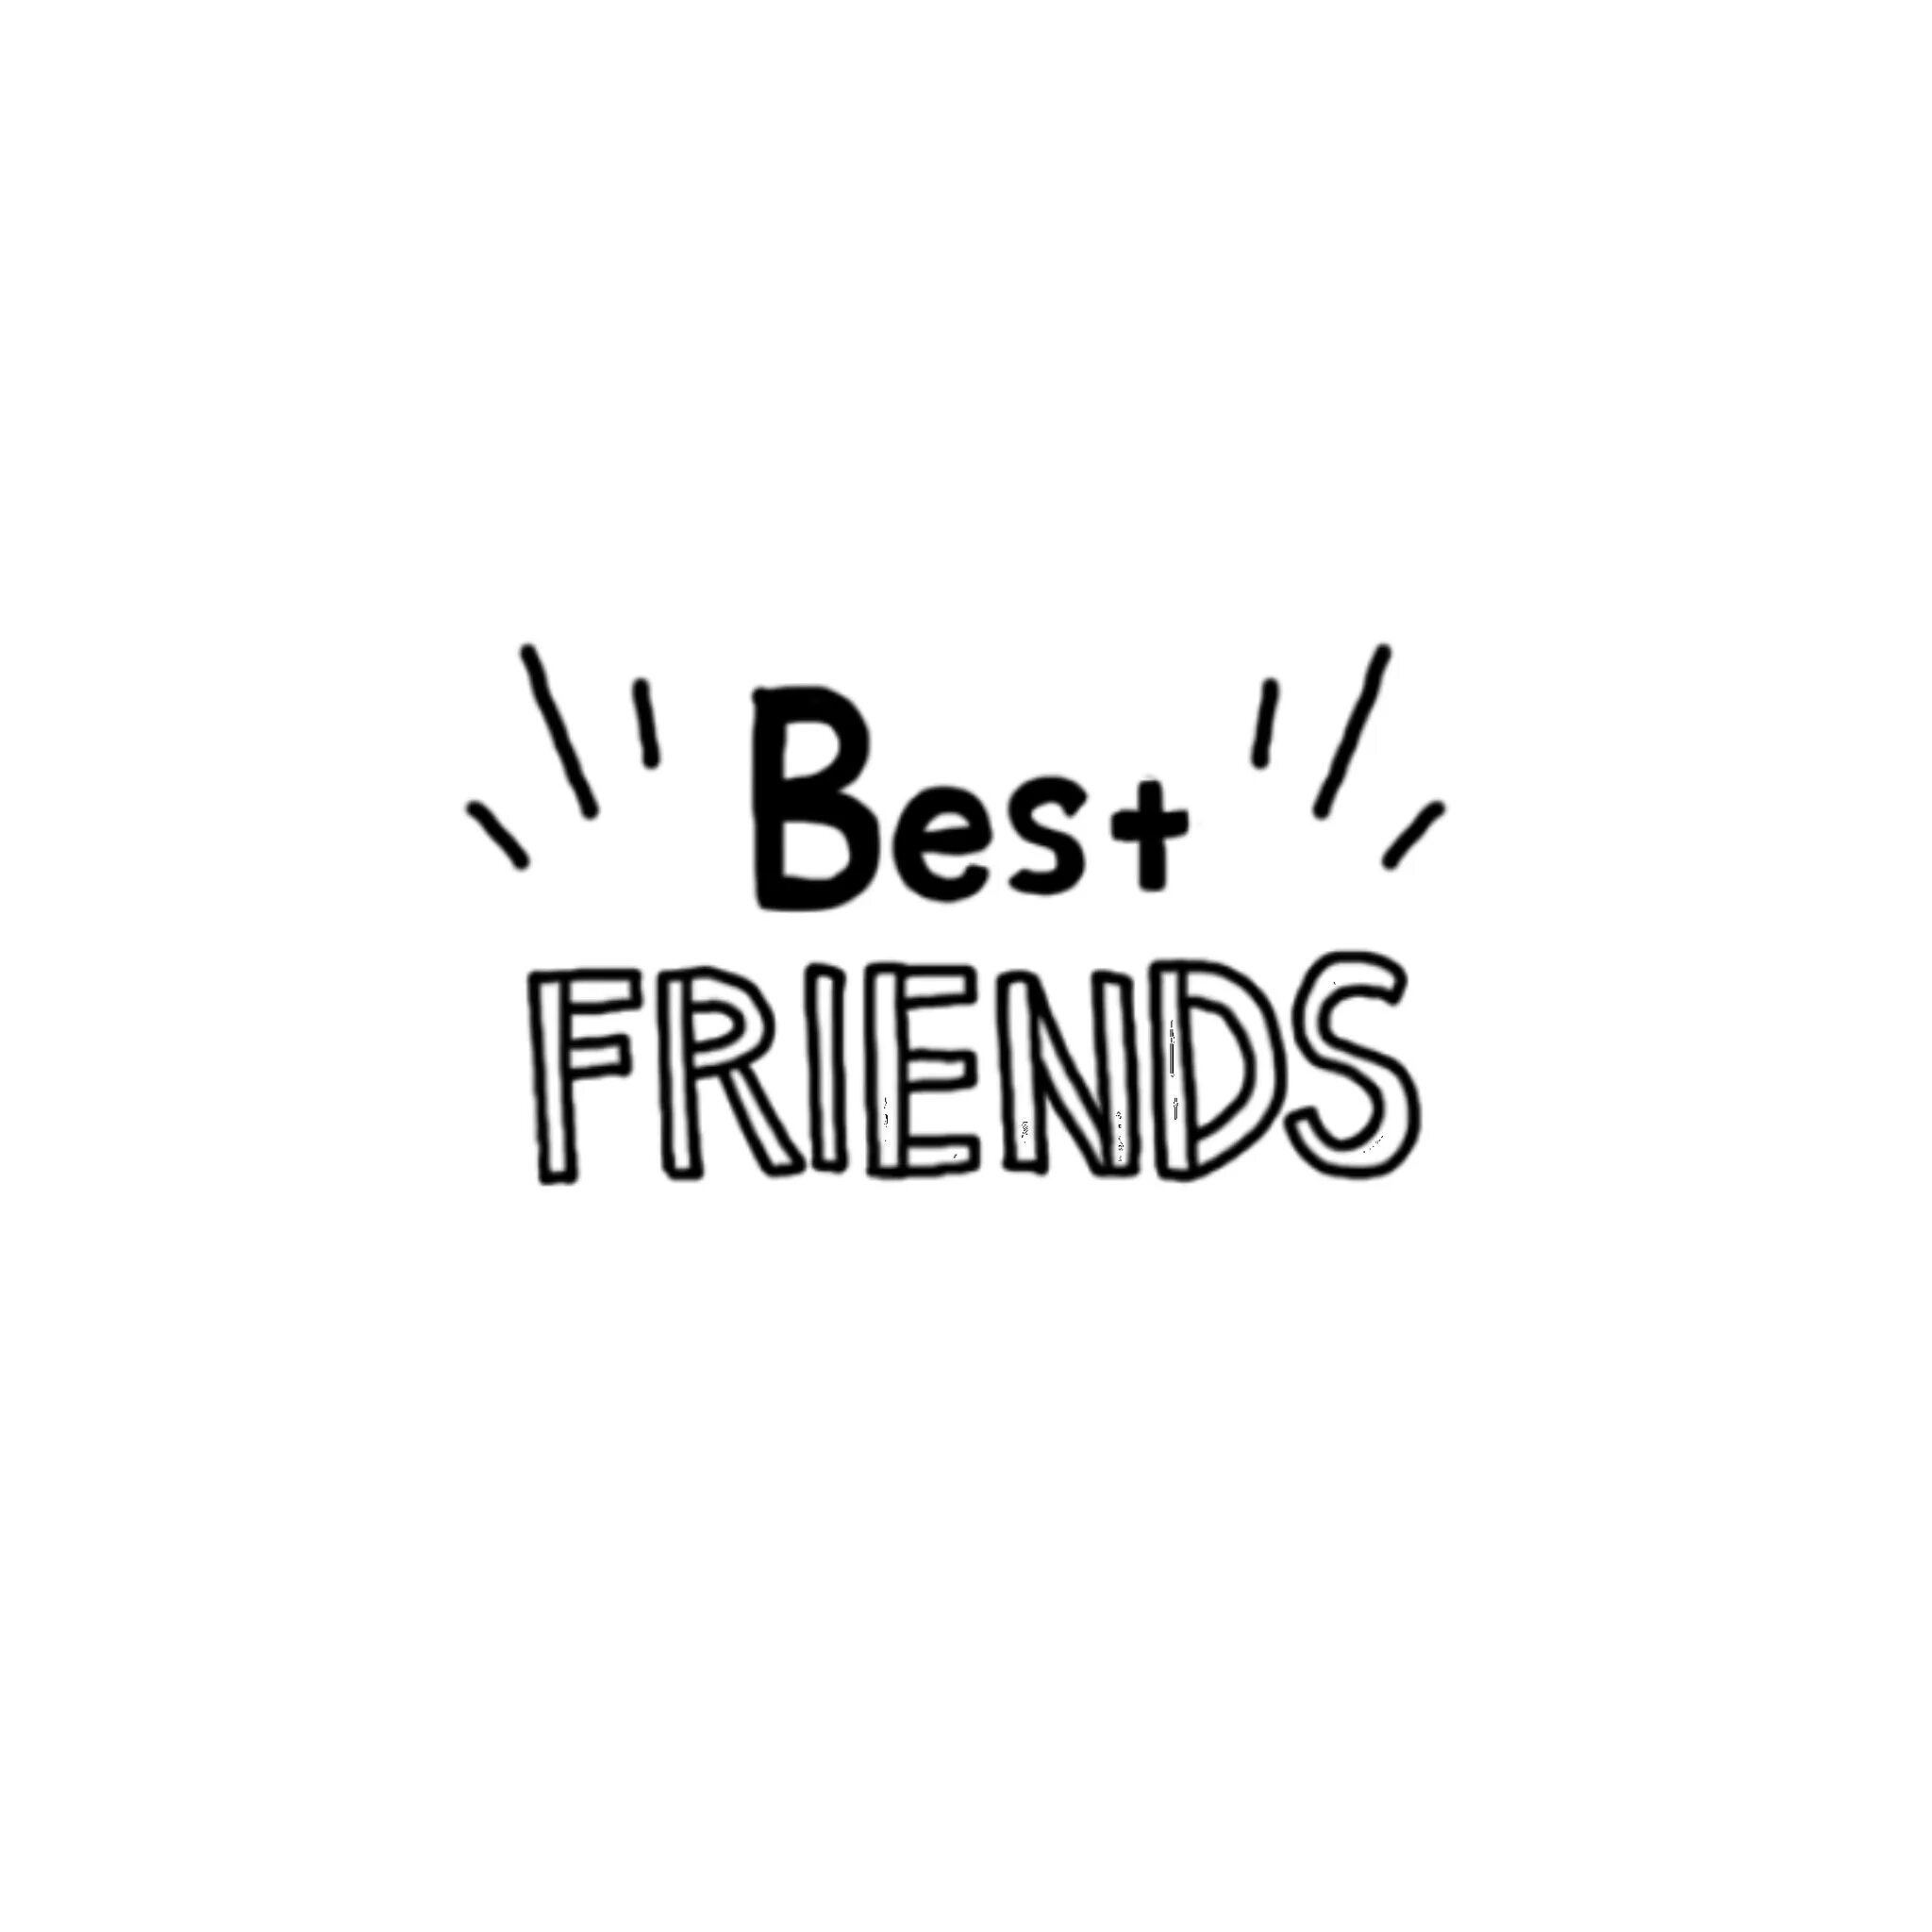 New friends text. Friends надпись. Надпись Бест френдс. Наклейки best friends. Friends надпись красивая.